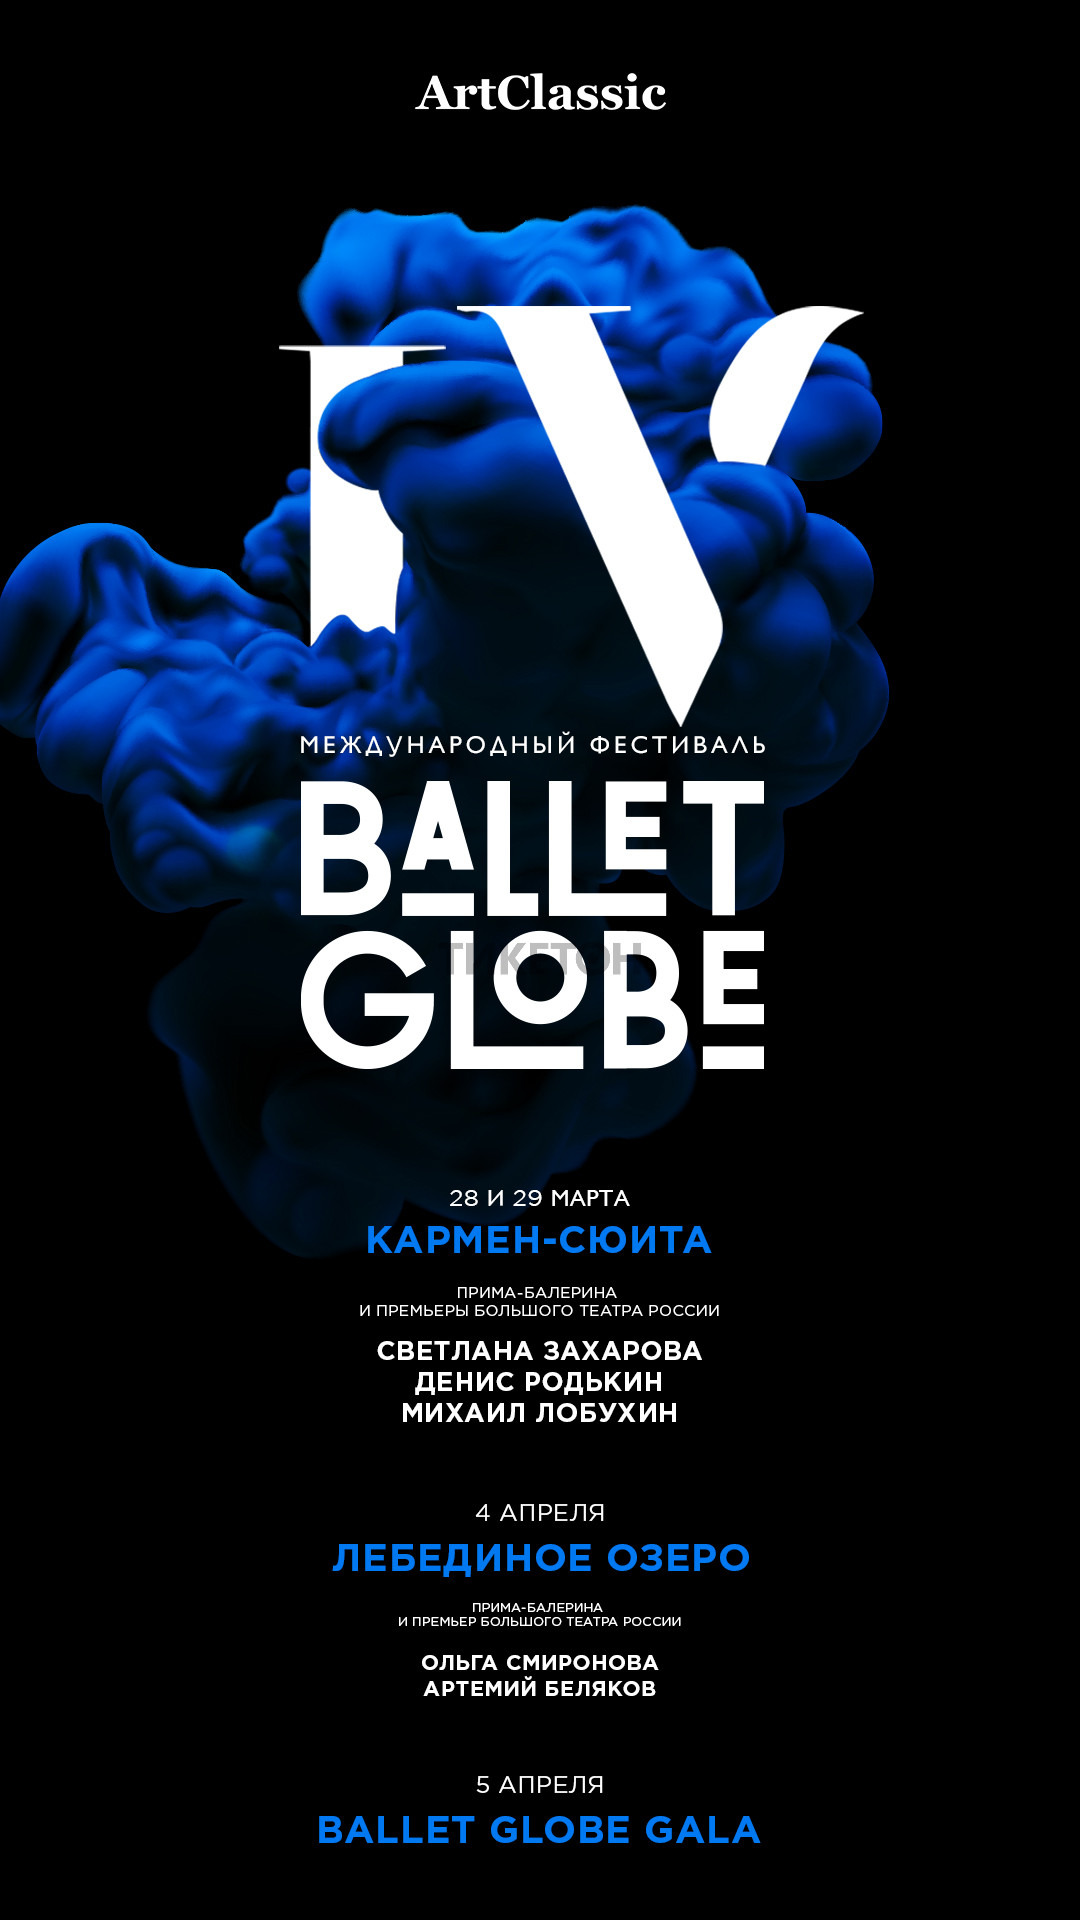 https://ticketon.kz/media/upload/17481u30239_iv-mezhdunarodnyy-festival-tantsa-ballet-globe-lebedinoe-ozero.jpg